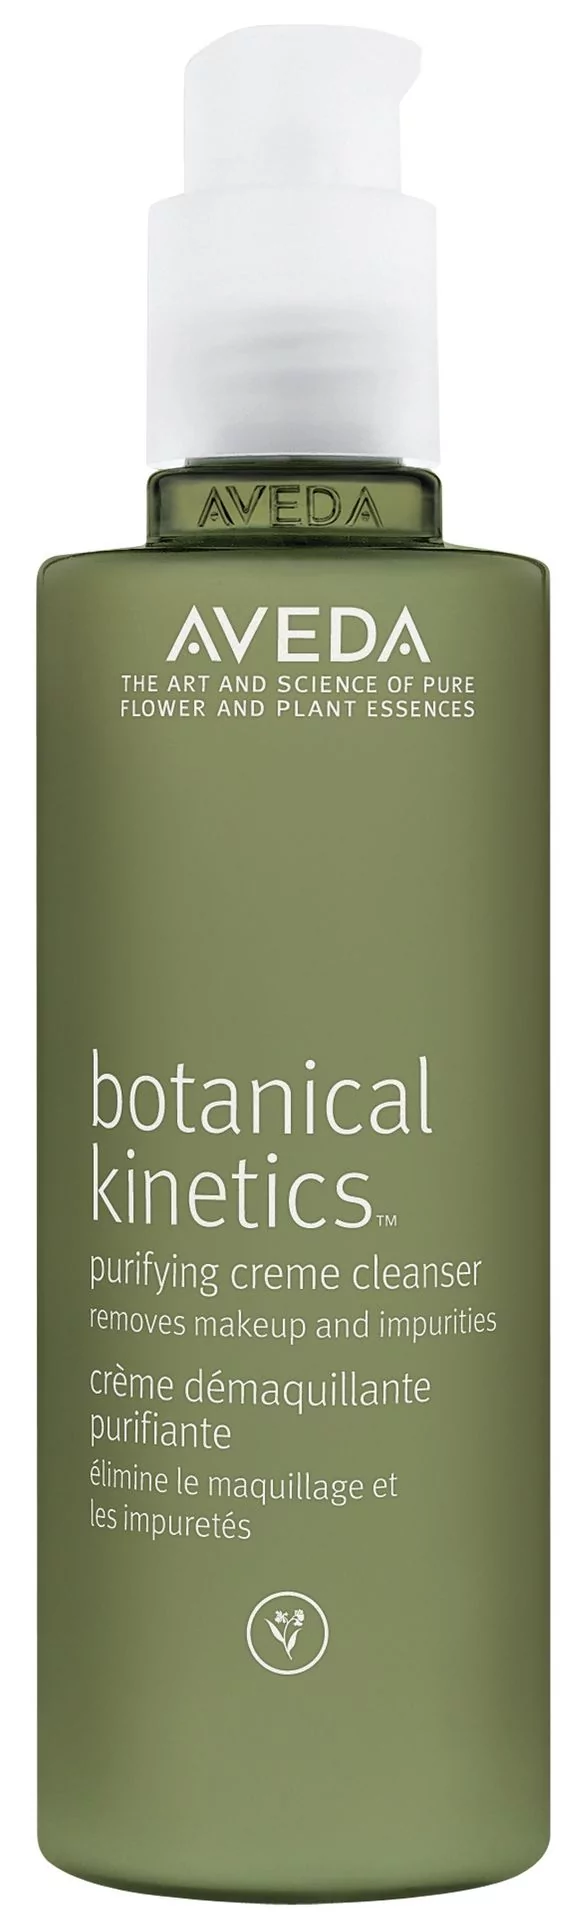 AVEDA Botanical Kinetics Kremowe mleczko oczyszczające 150 ml